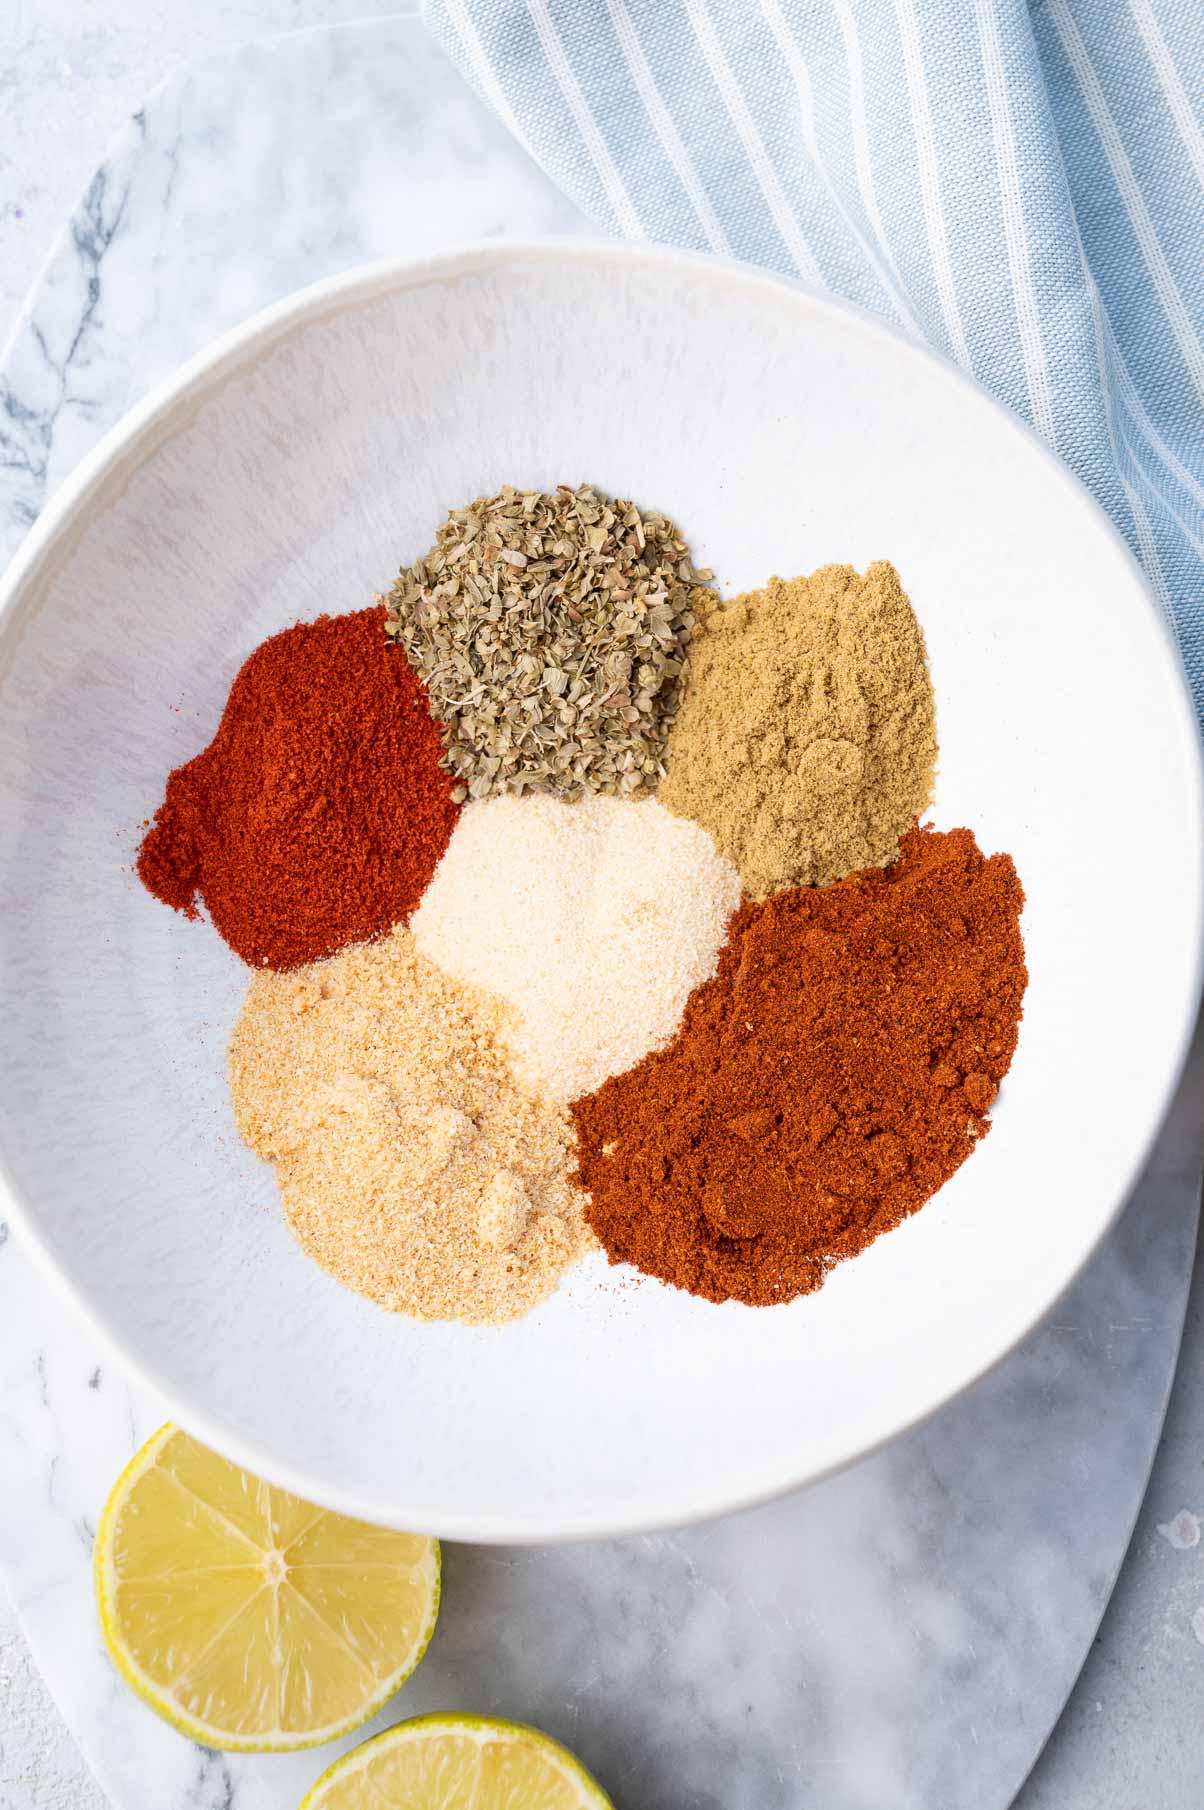 Ingredients for fajita seasoning in a white bowl.